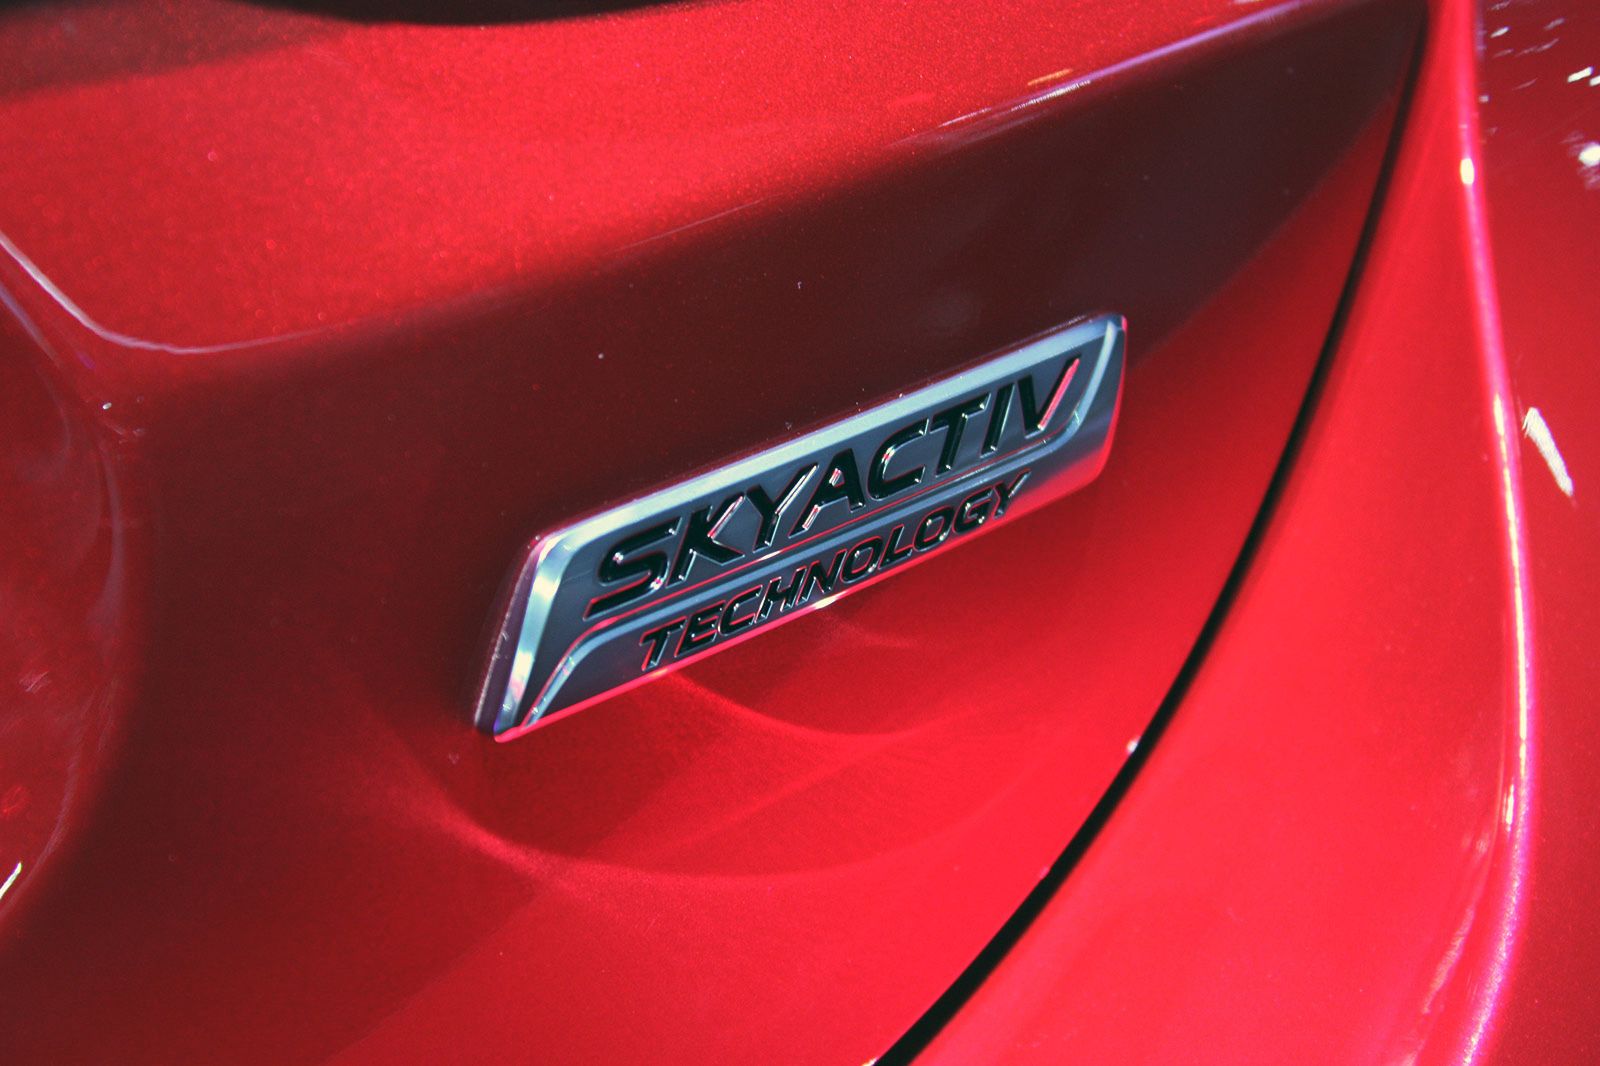 2016 - 2017 Mazda6